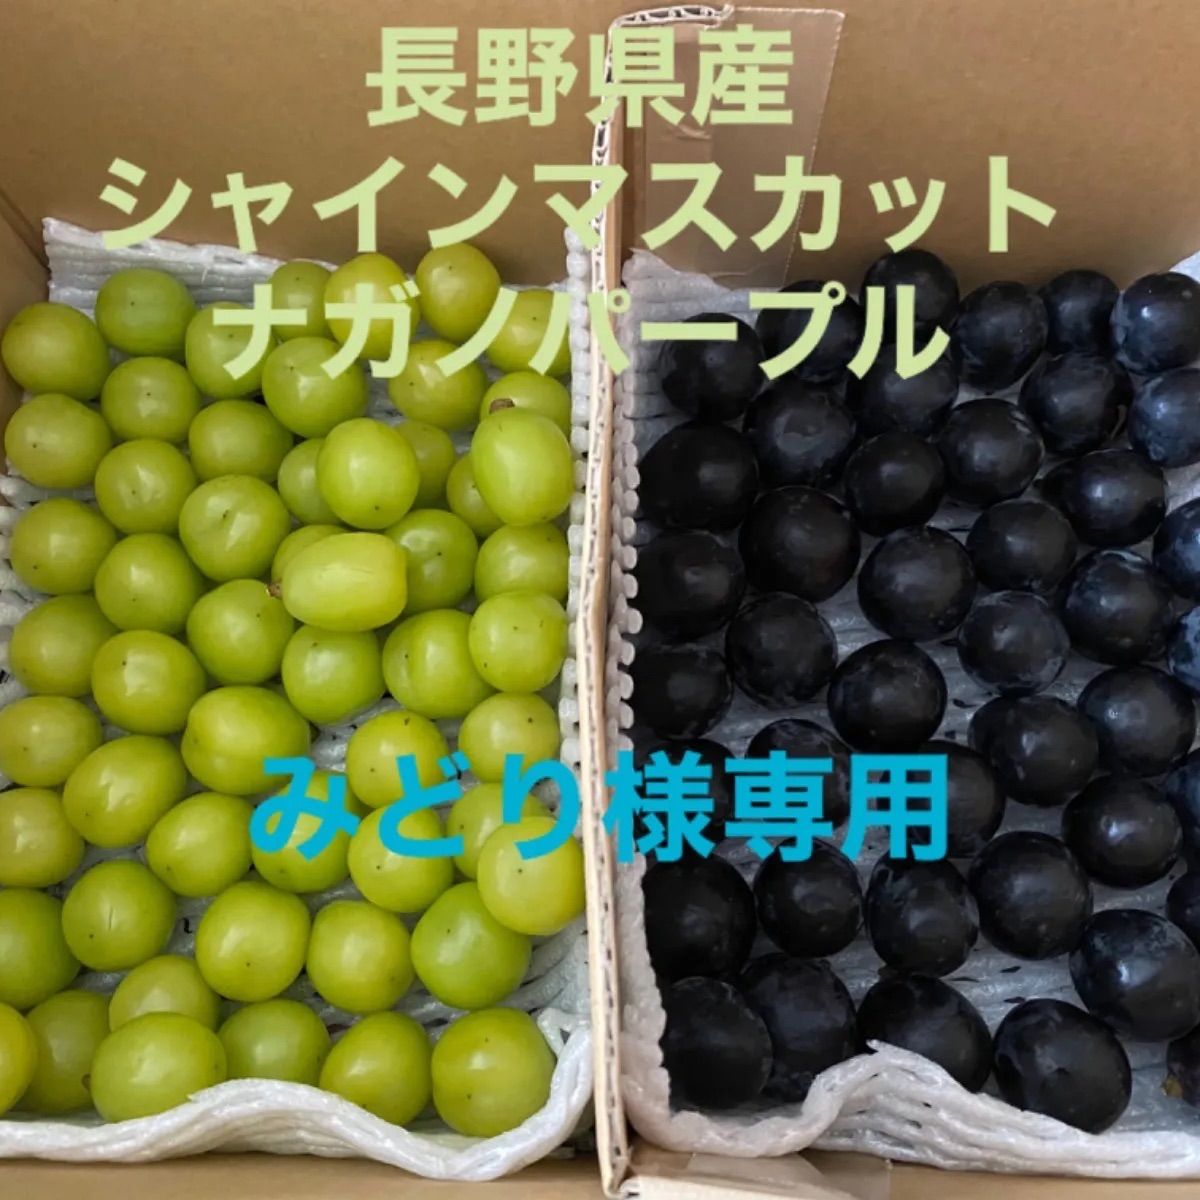 長野県産 ナガノパープル シャインマスカット 粒 1キロ - 通販